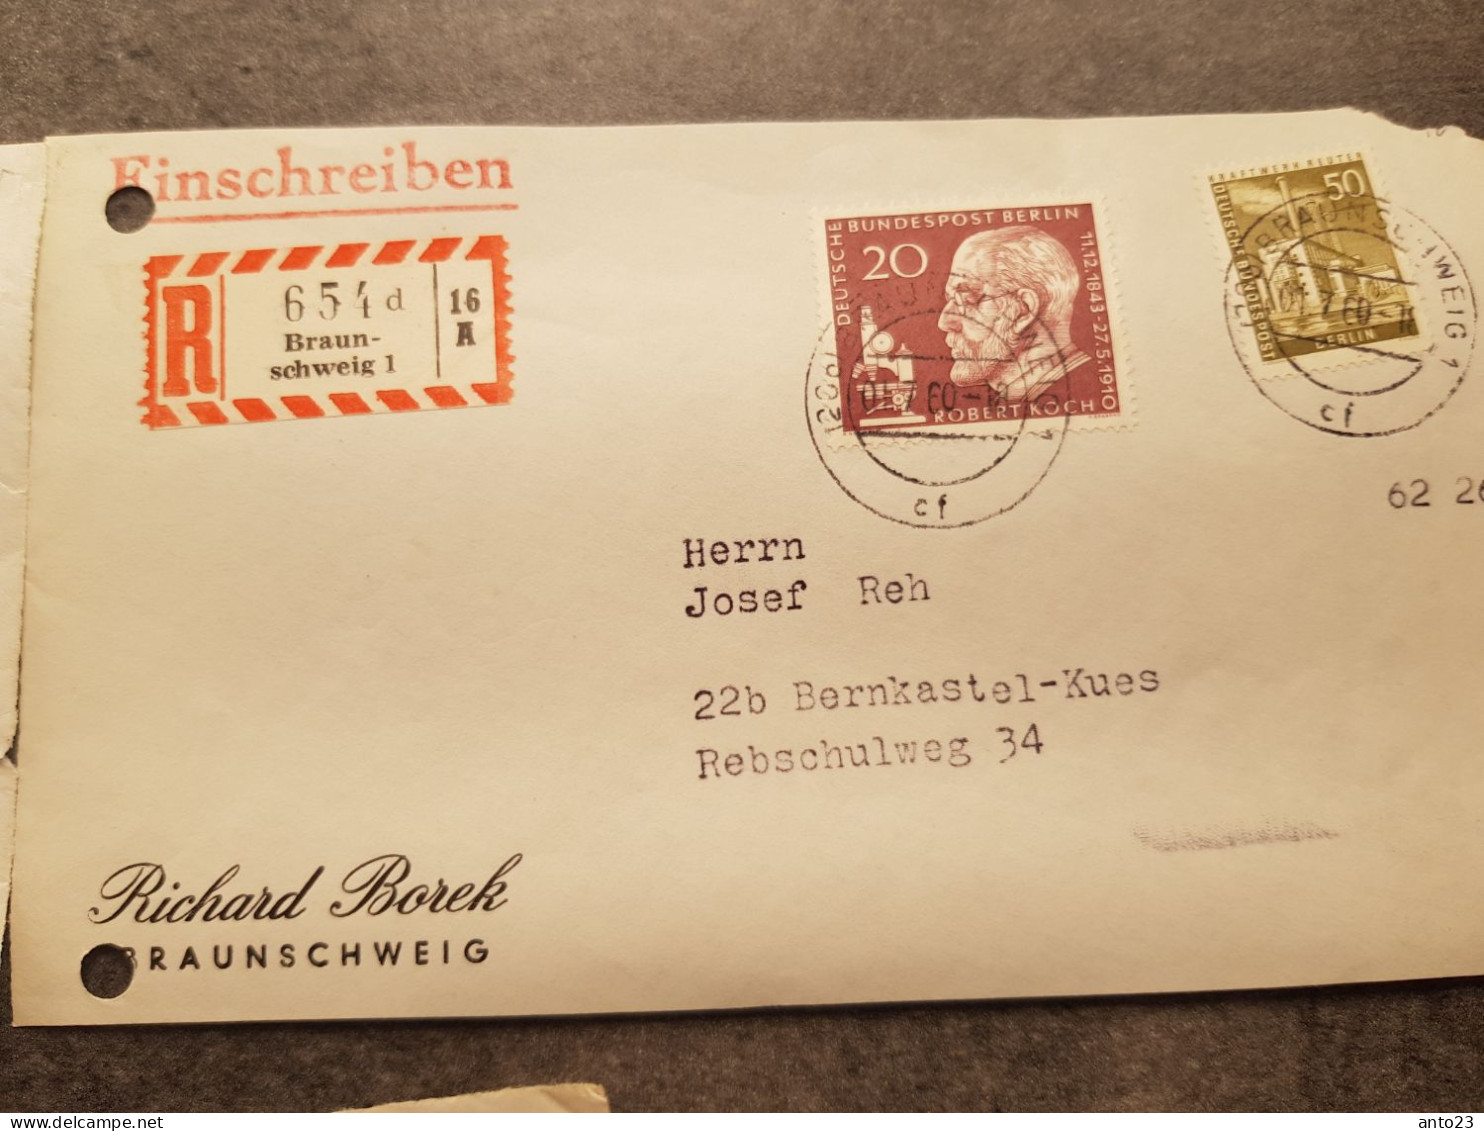 Satz von 9 Vorderseiten Einschreibebriefen aus Braunschweig mit Berliner Briefmarkenfrankatur